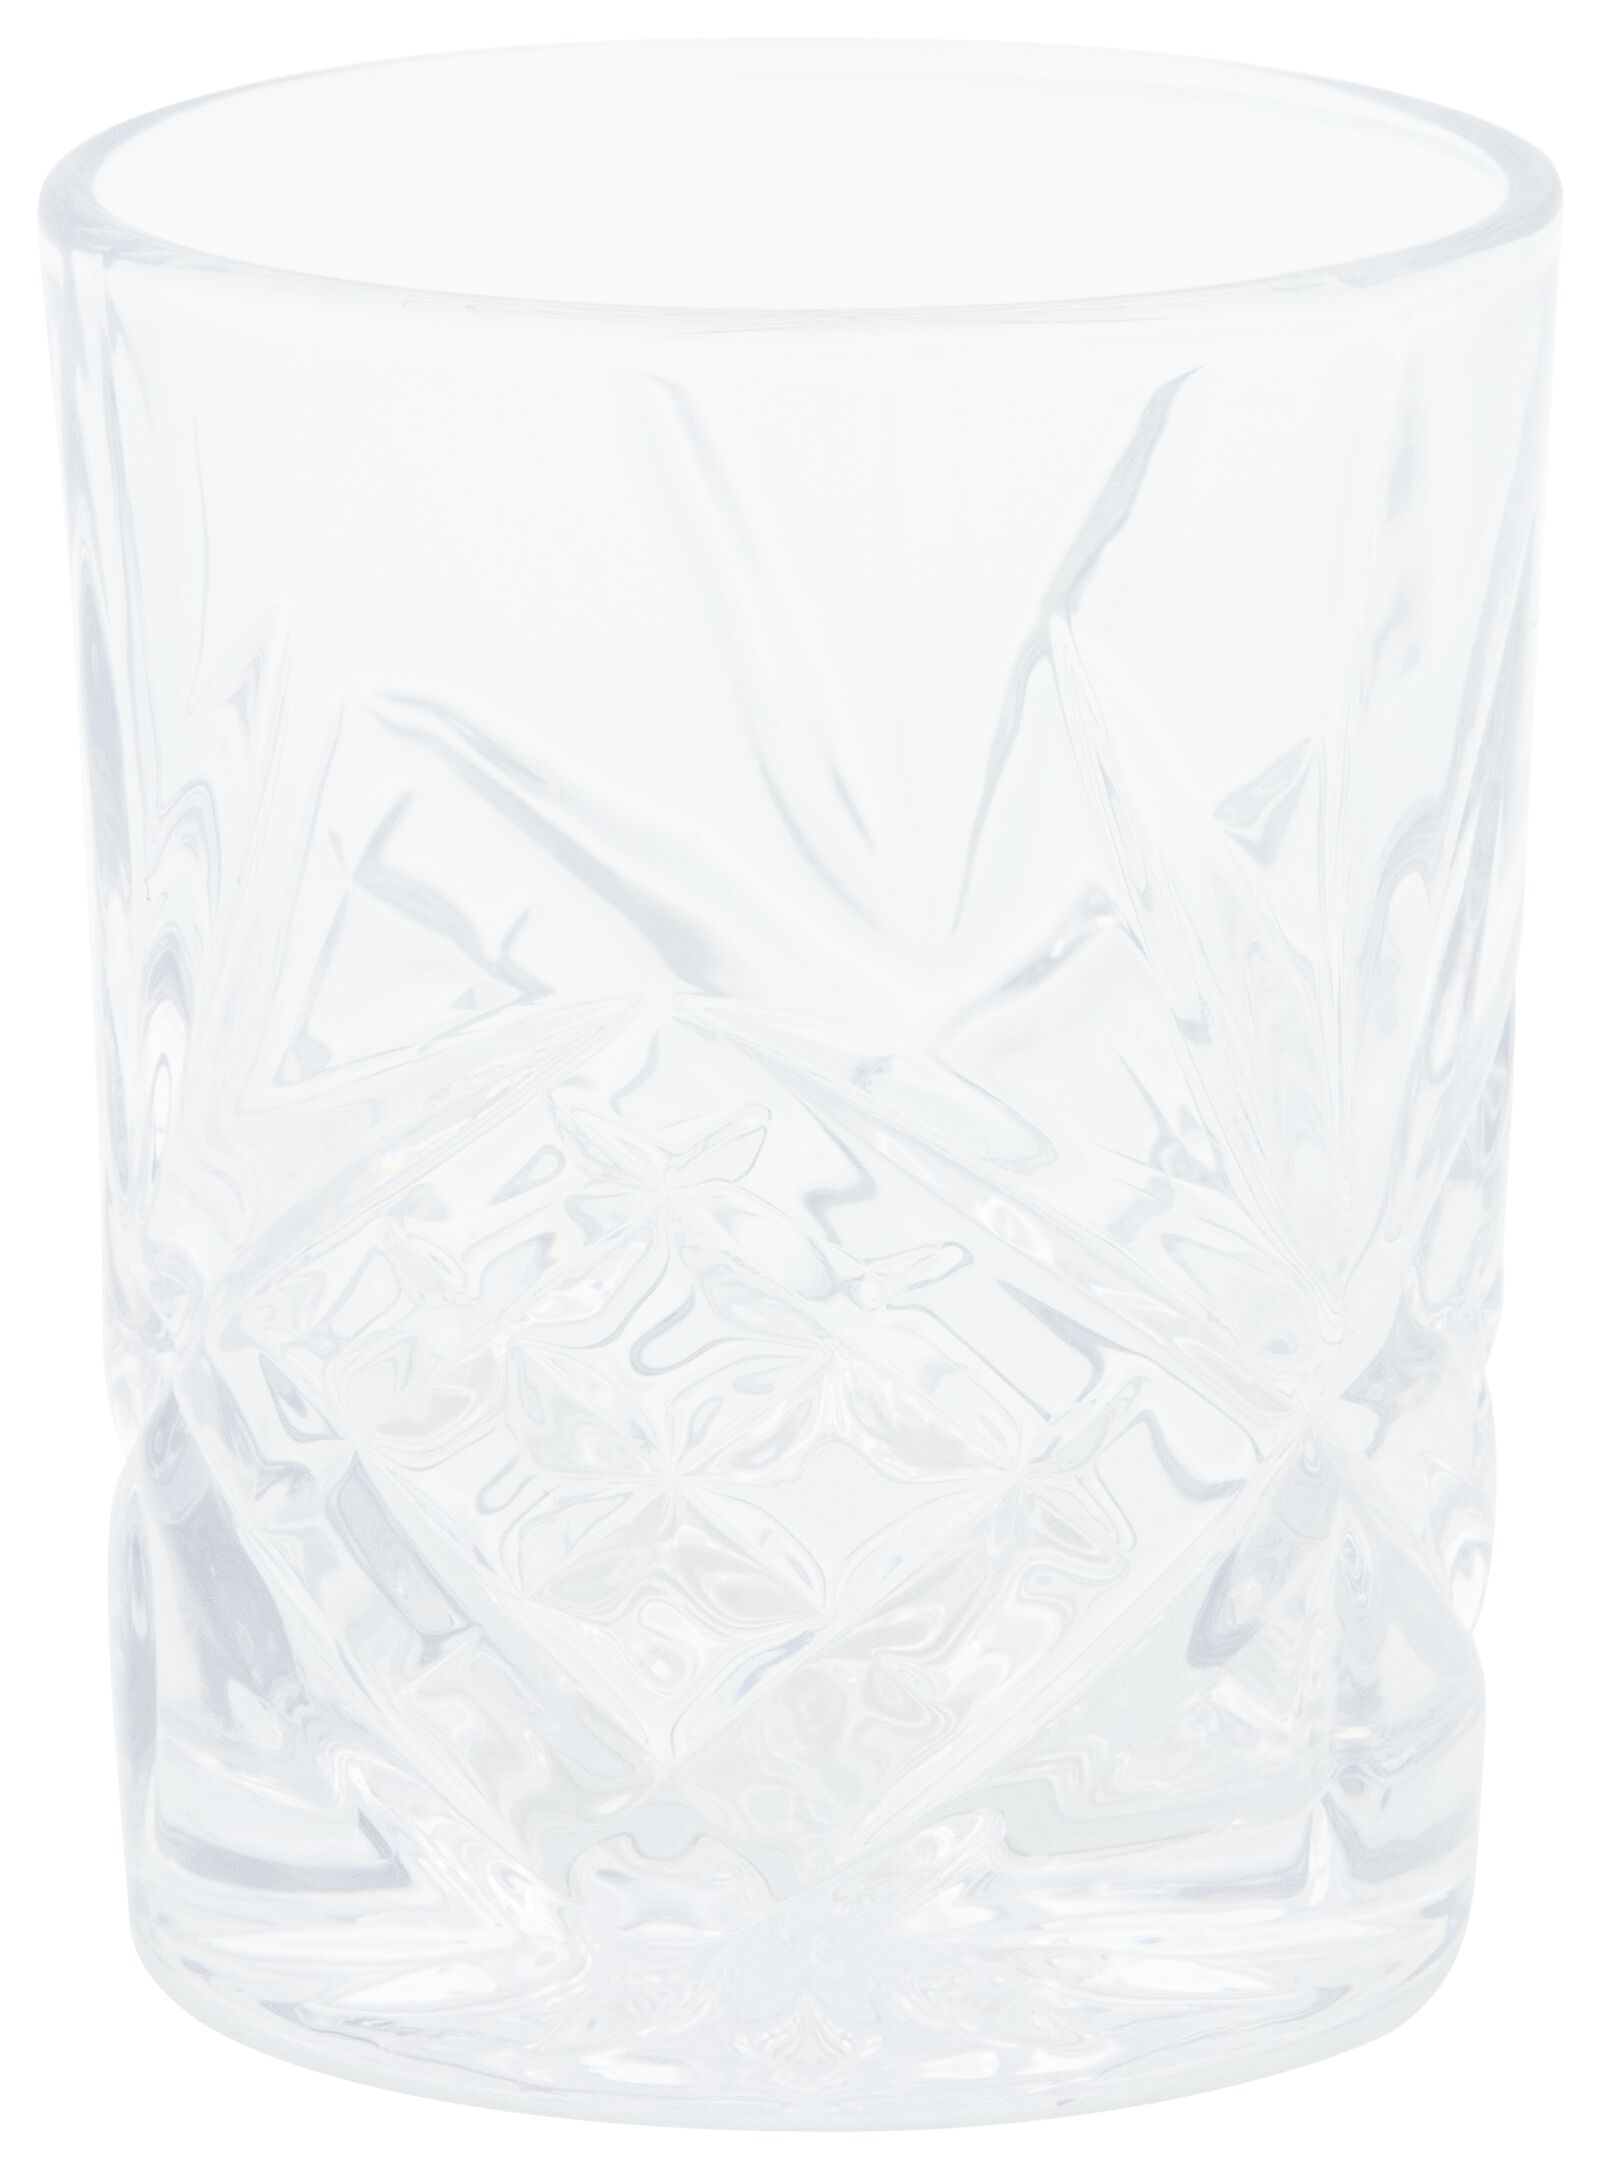 whiskeyglas 290ml - HEMA